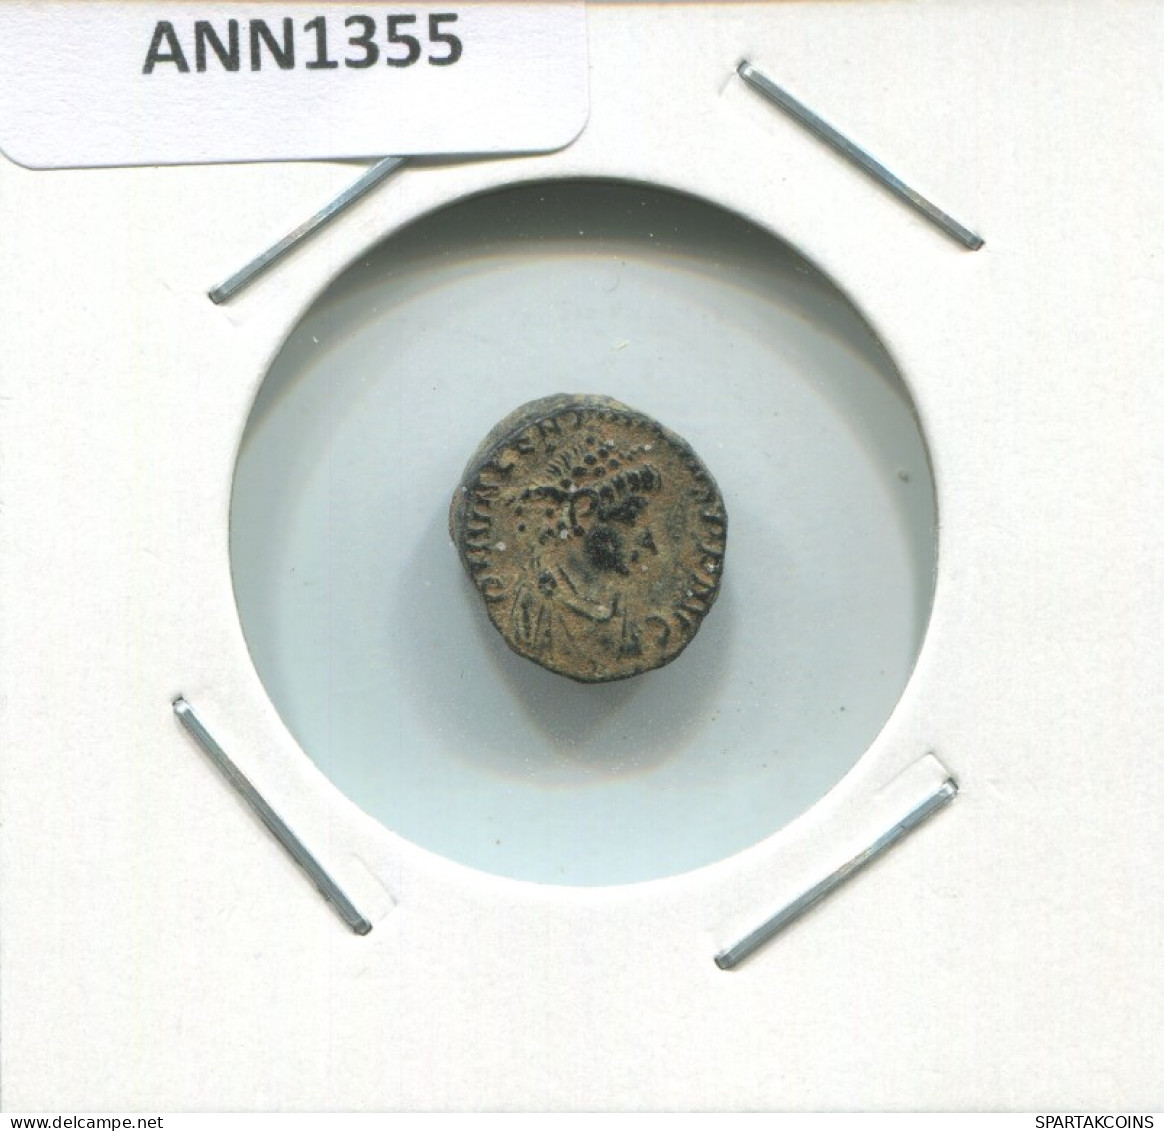 ARCADIUS ANTIOCHE ANTΔ AD388-391 SALVS REI-PVBLICAE 1.6g/13mm #ANN1355.9.D.A - Der Spätrömanischen Reich (363 / 476)